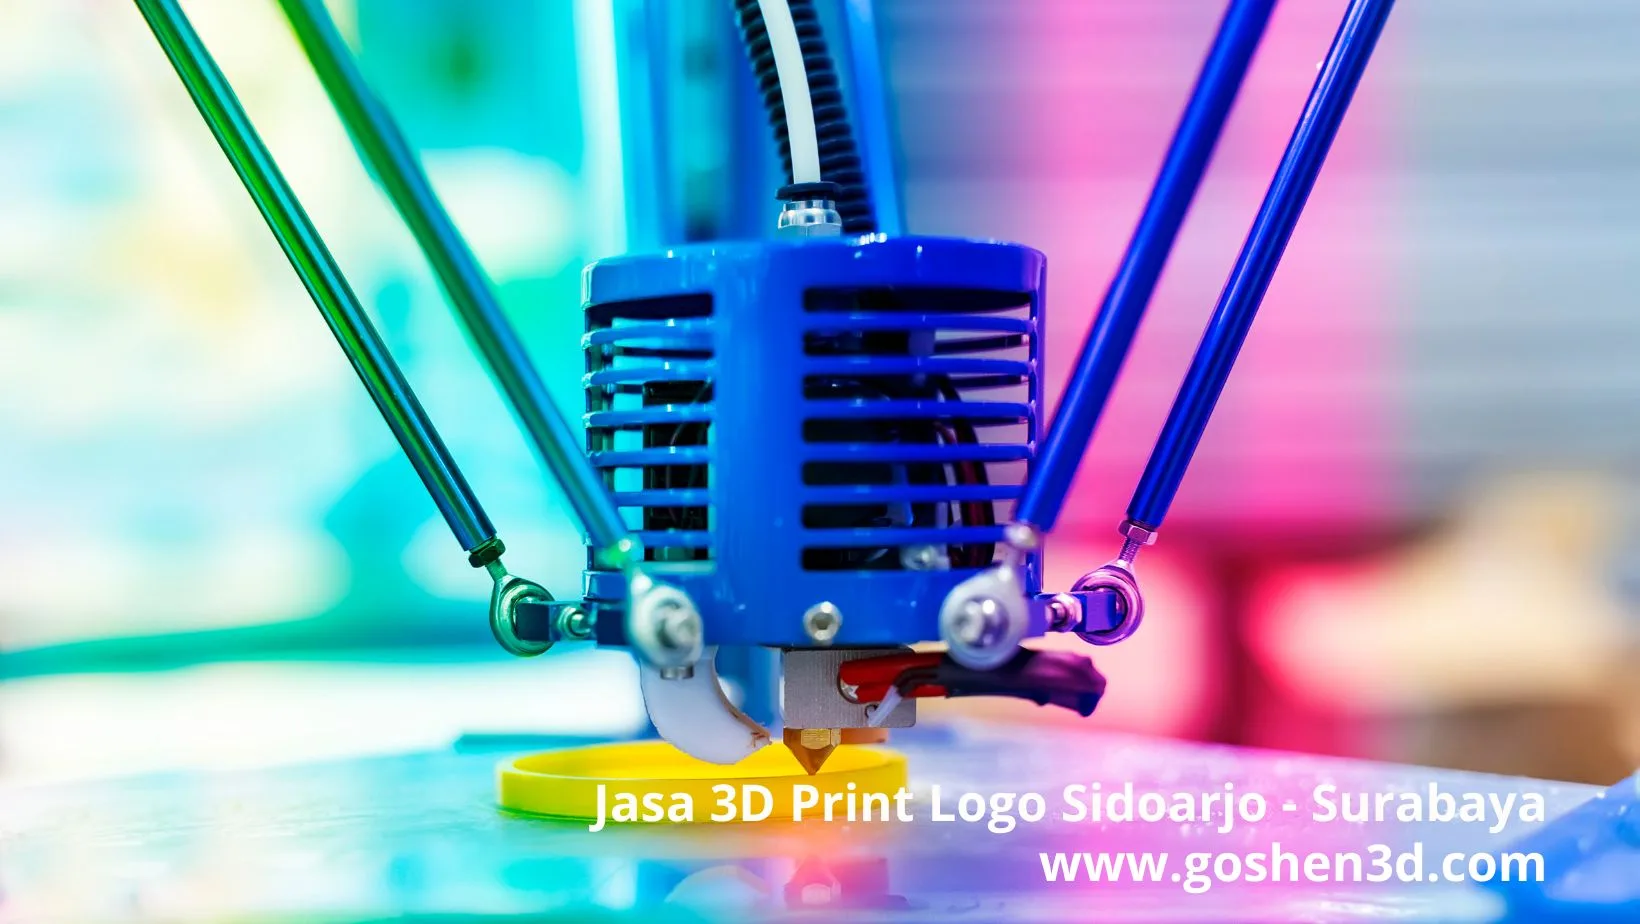 Jasa 3D Print logo Sidoarjo